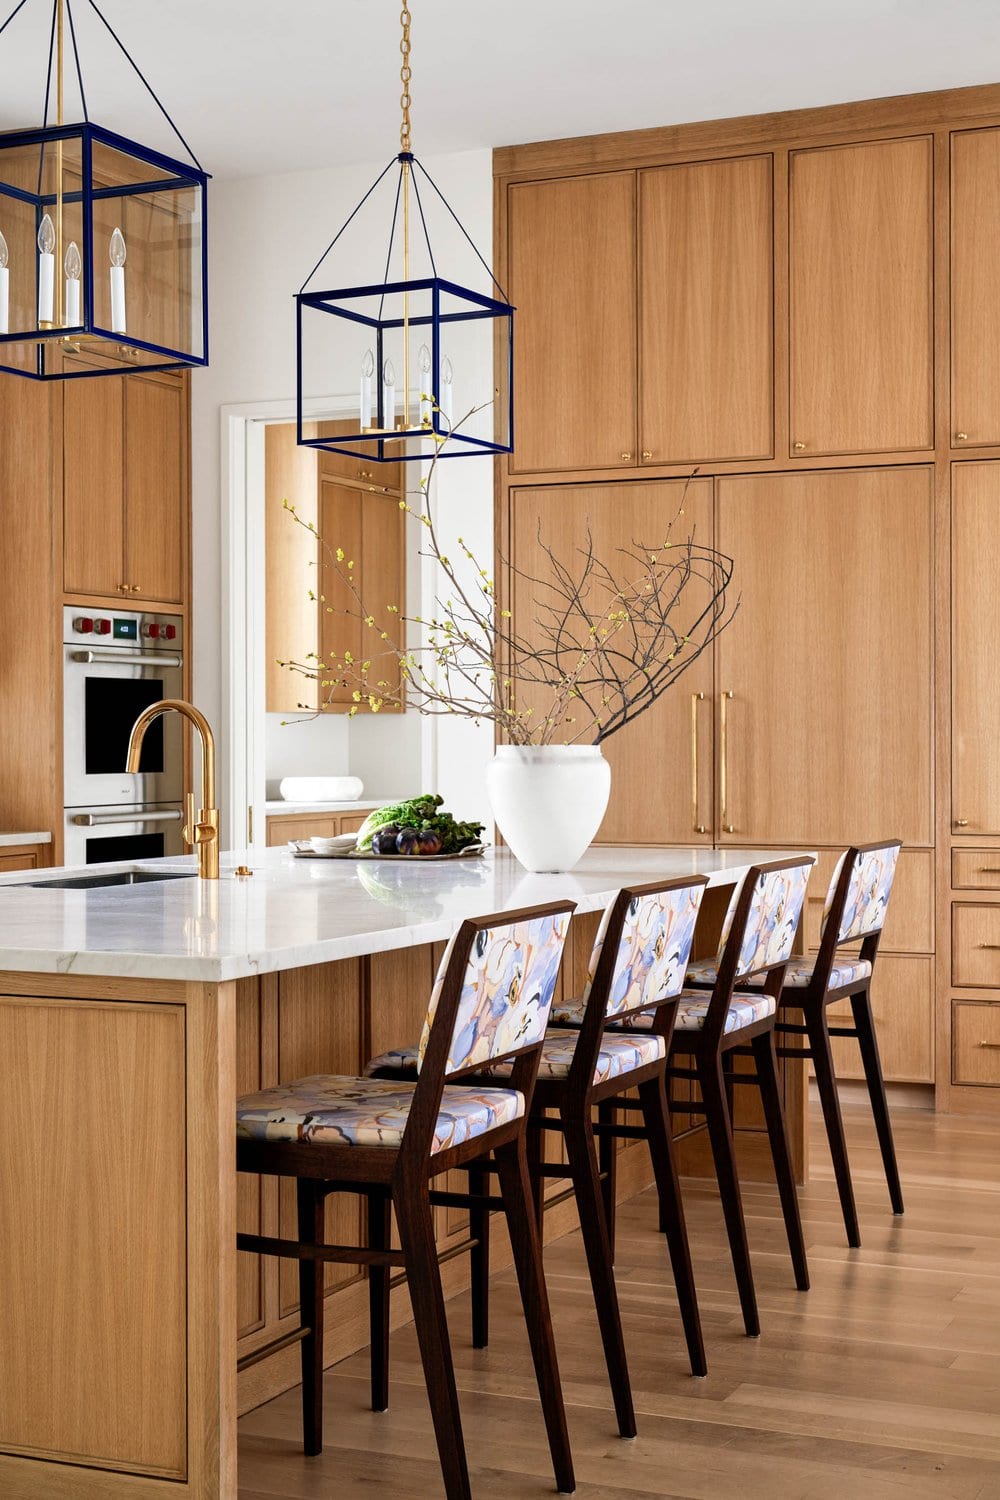 Jenkins Interiors - Nathan Schroder Photographer -kitchen - kitchen decor - kitchen remodel - lanterns